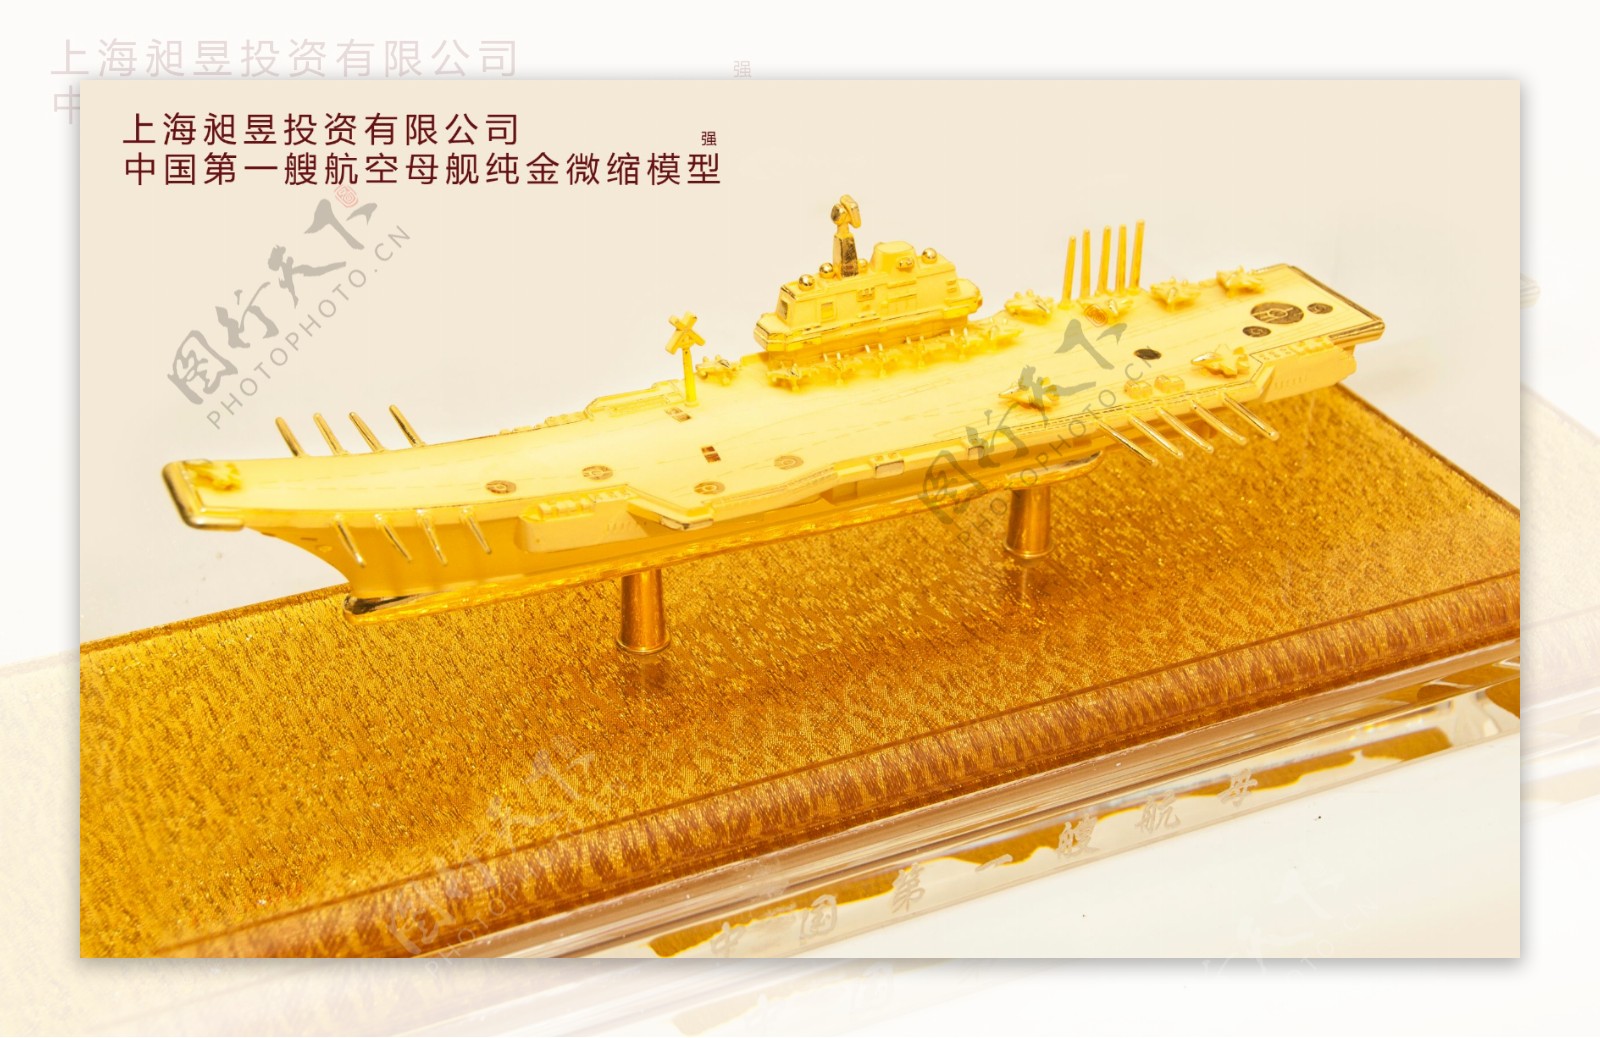 中国第一艘黄金微缩模型